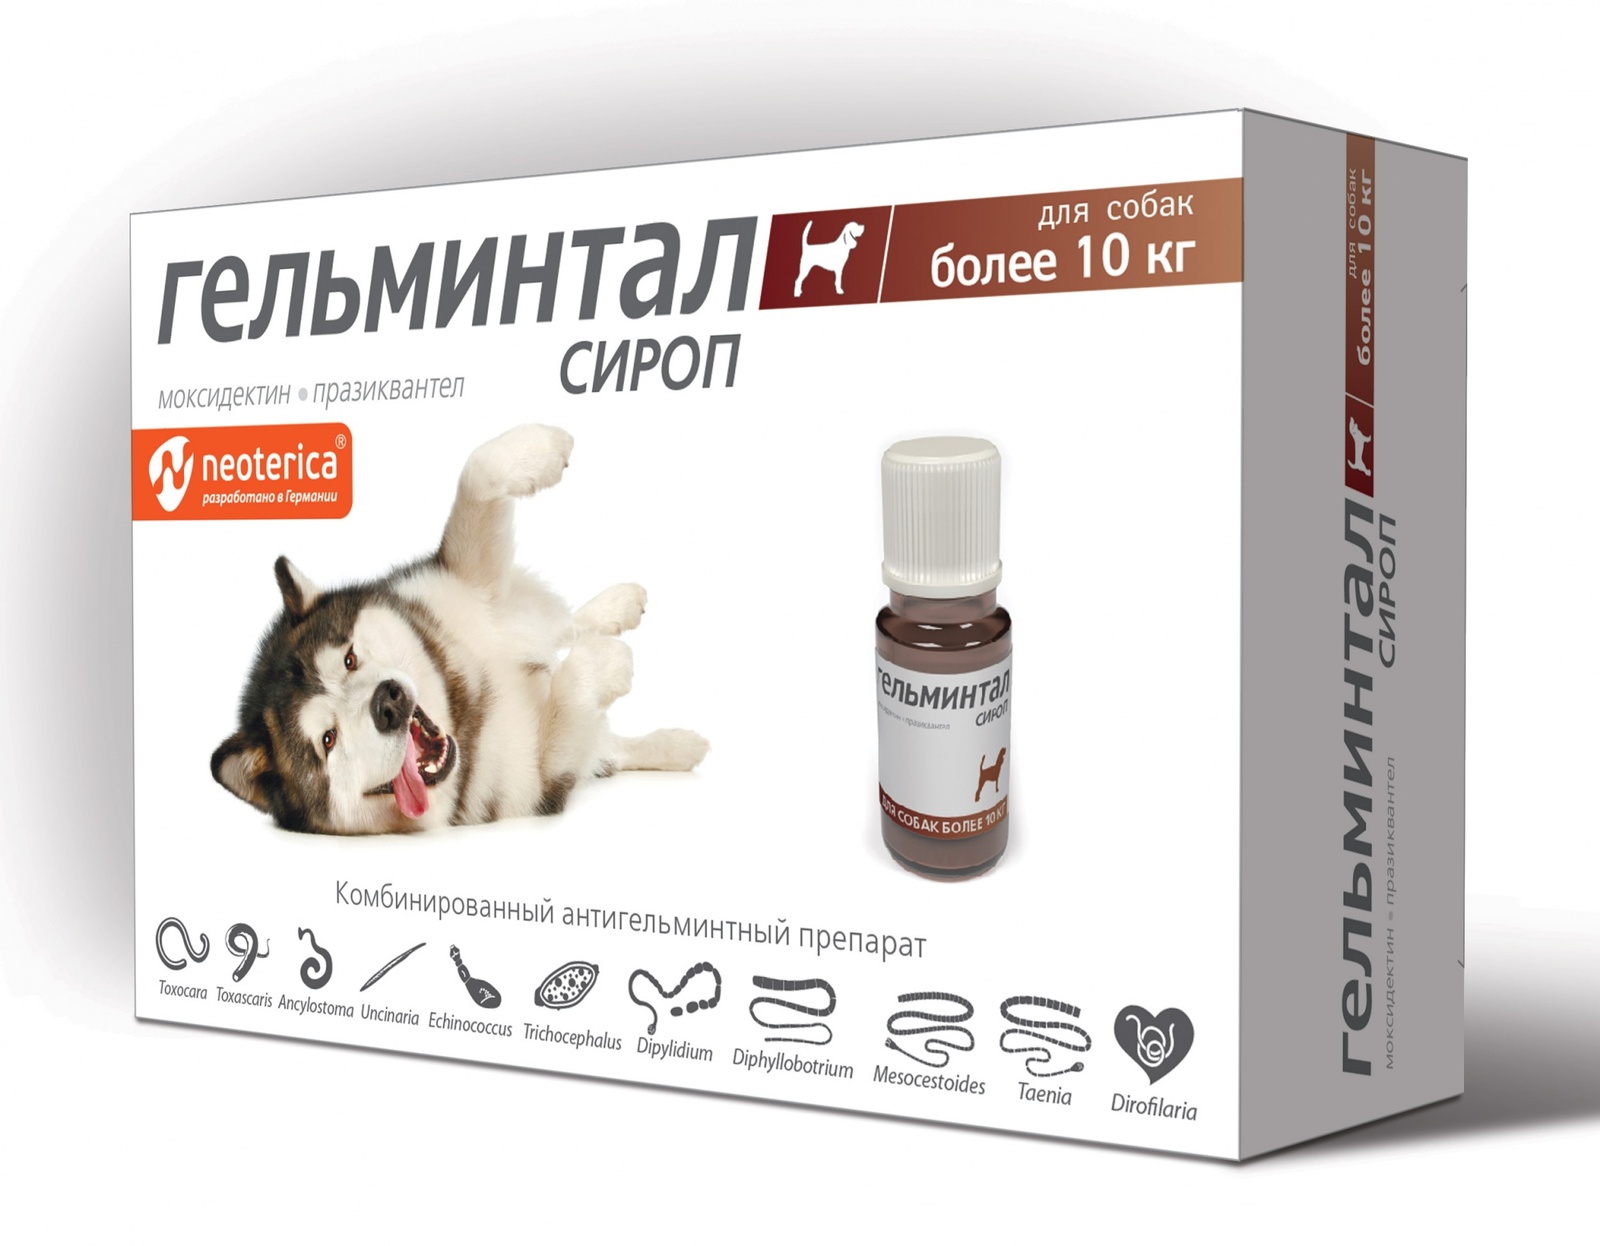 Гельминтал Гельминтал сироп от глистов для собак более 10 кг, 10 мл (60 г) гельминтал гельминтал капли на холку от глистов для собак более 10 кг 2 пипетки по 2 5 мл 20 г